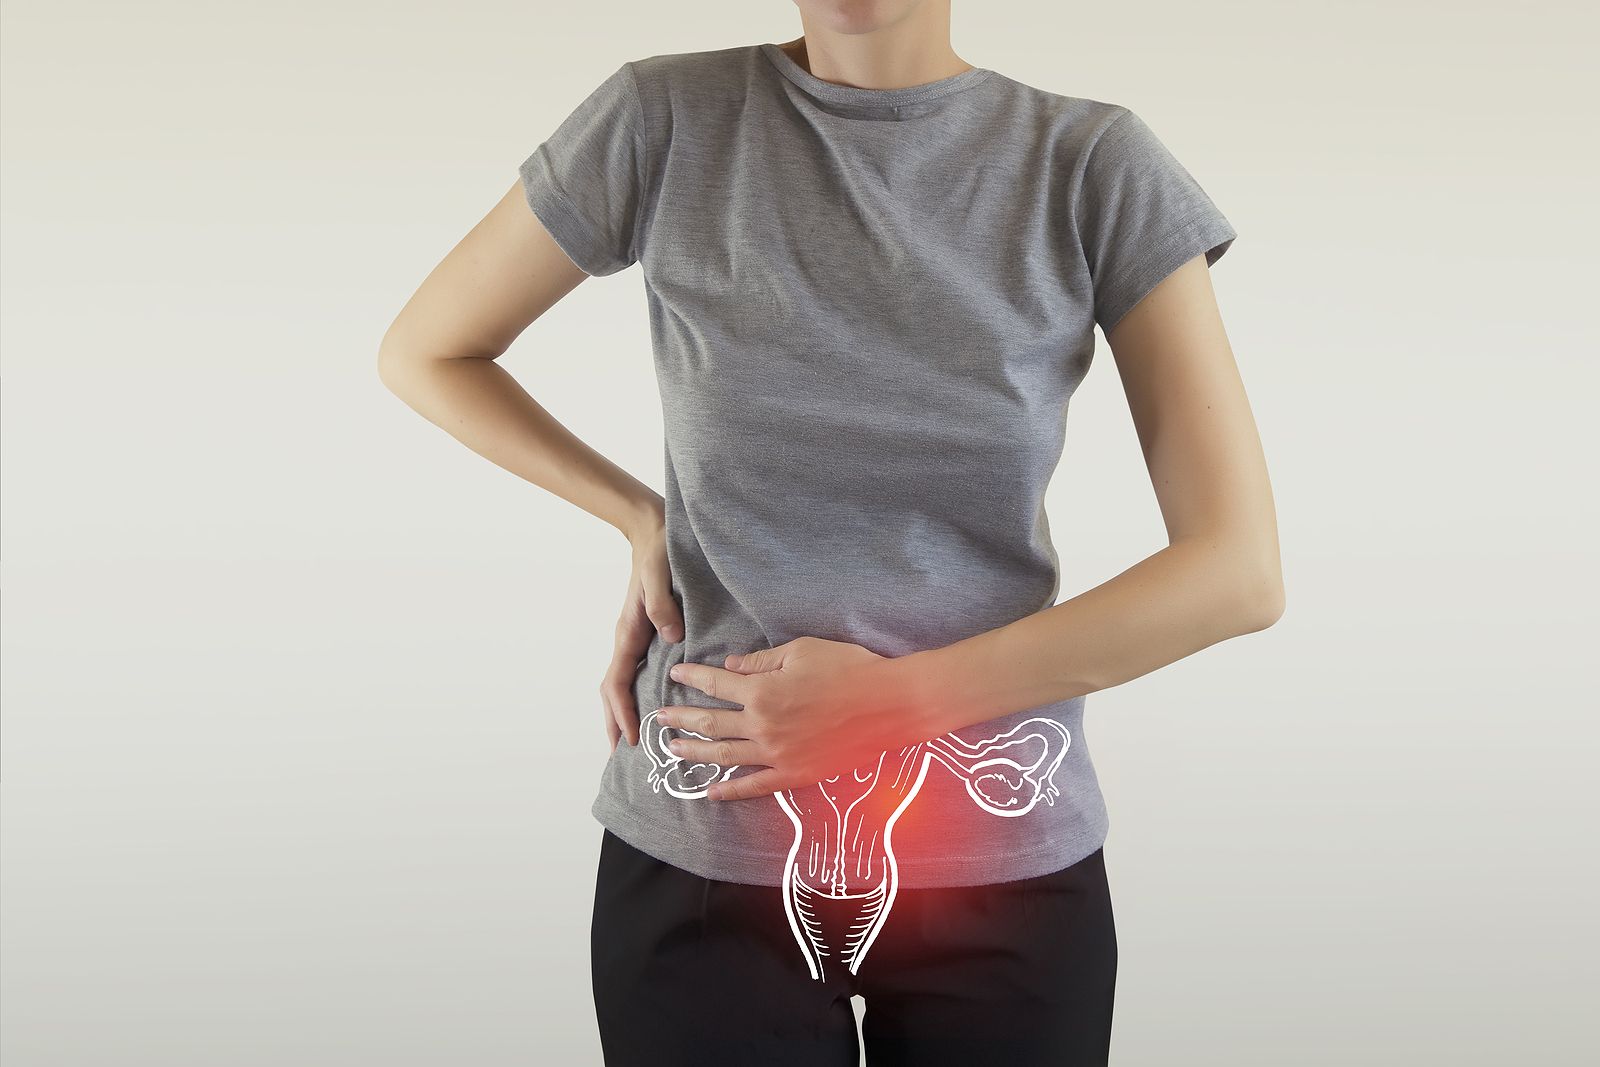 Problemy związane z miesiączką i endometriozą – rozmowa z ginekologiem